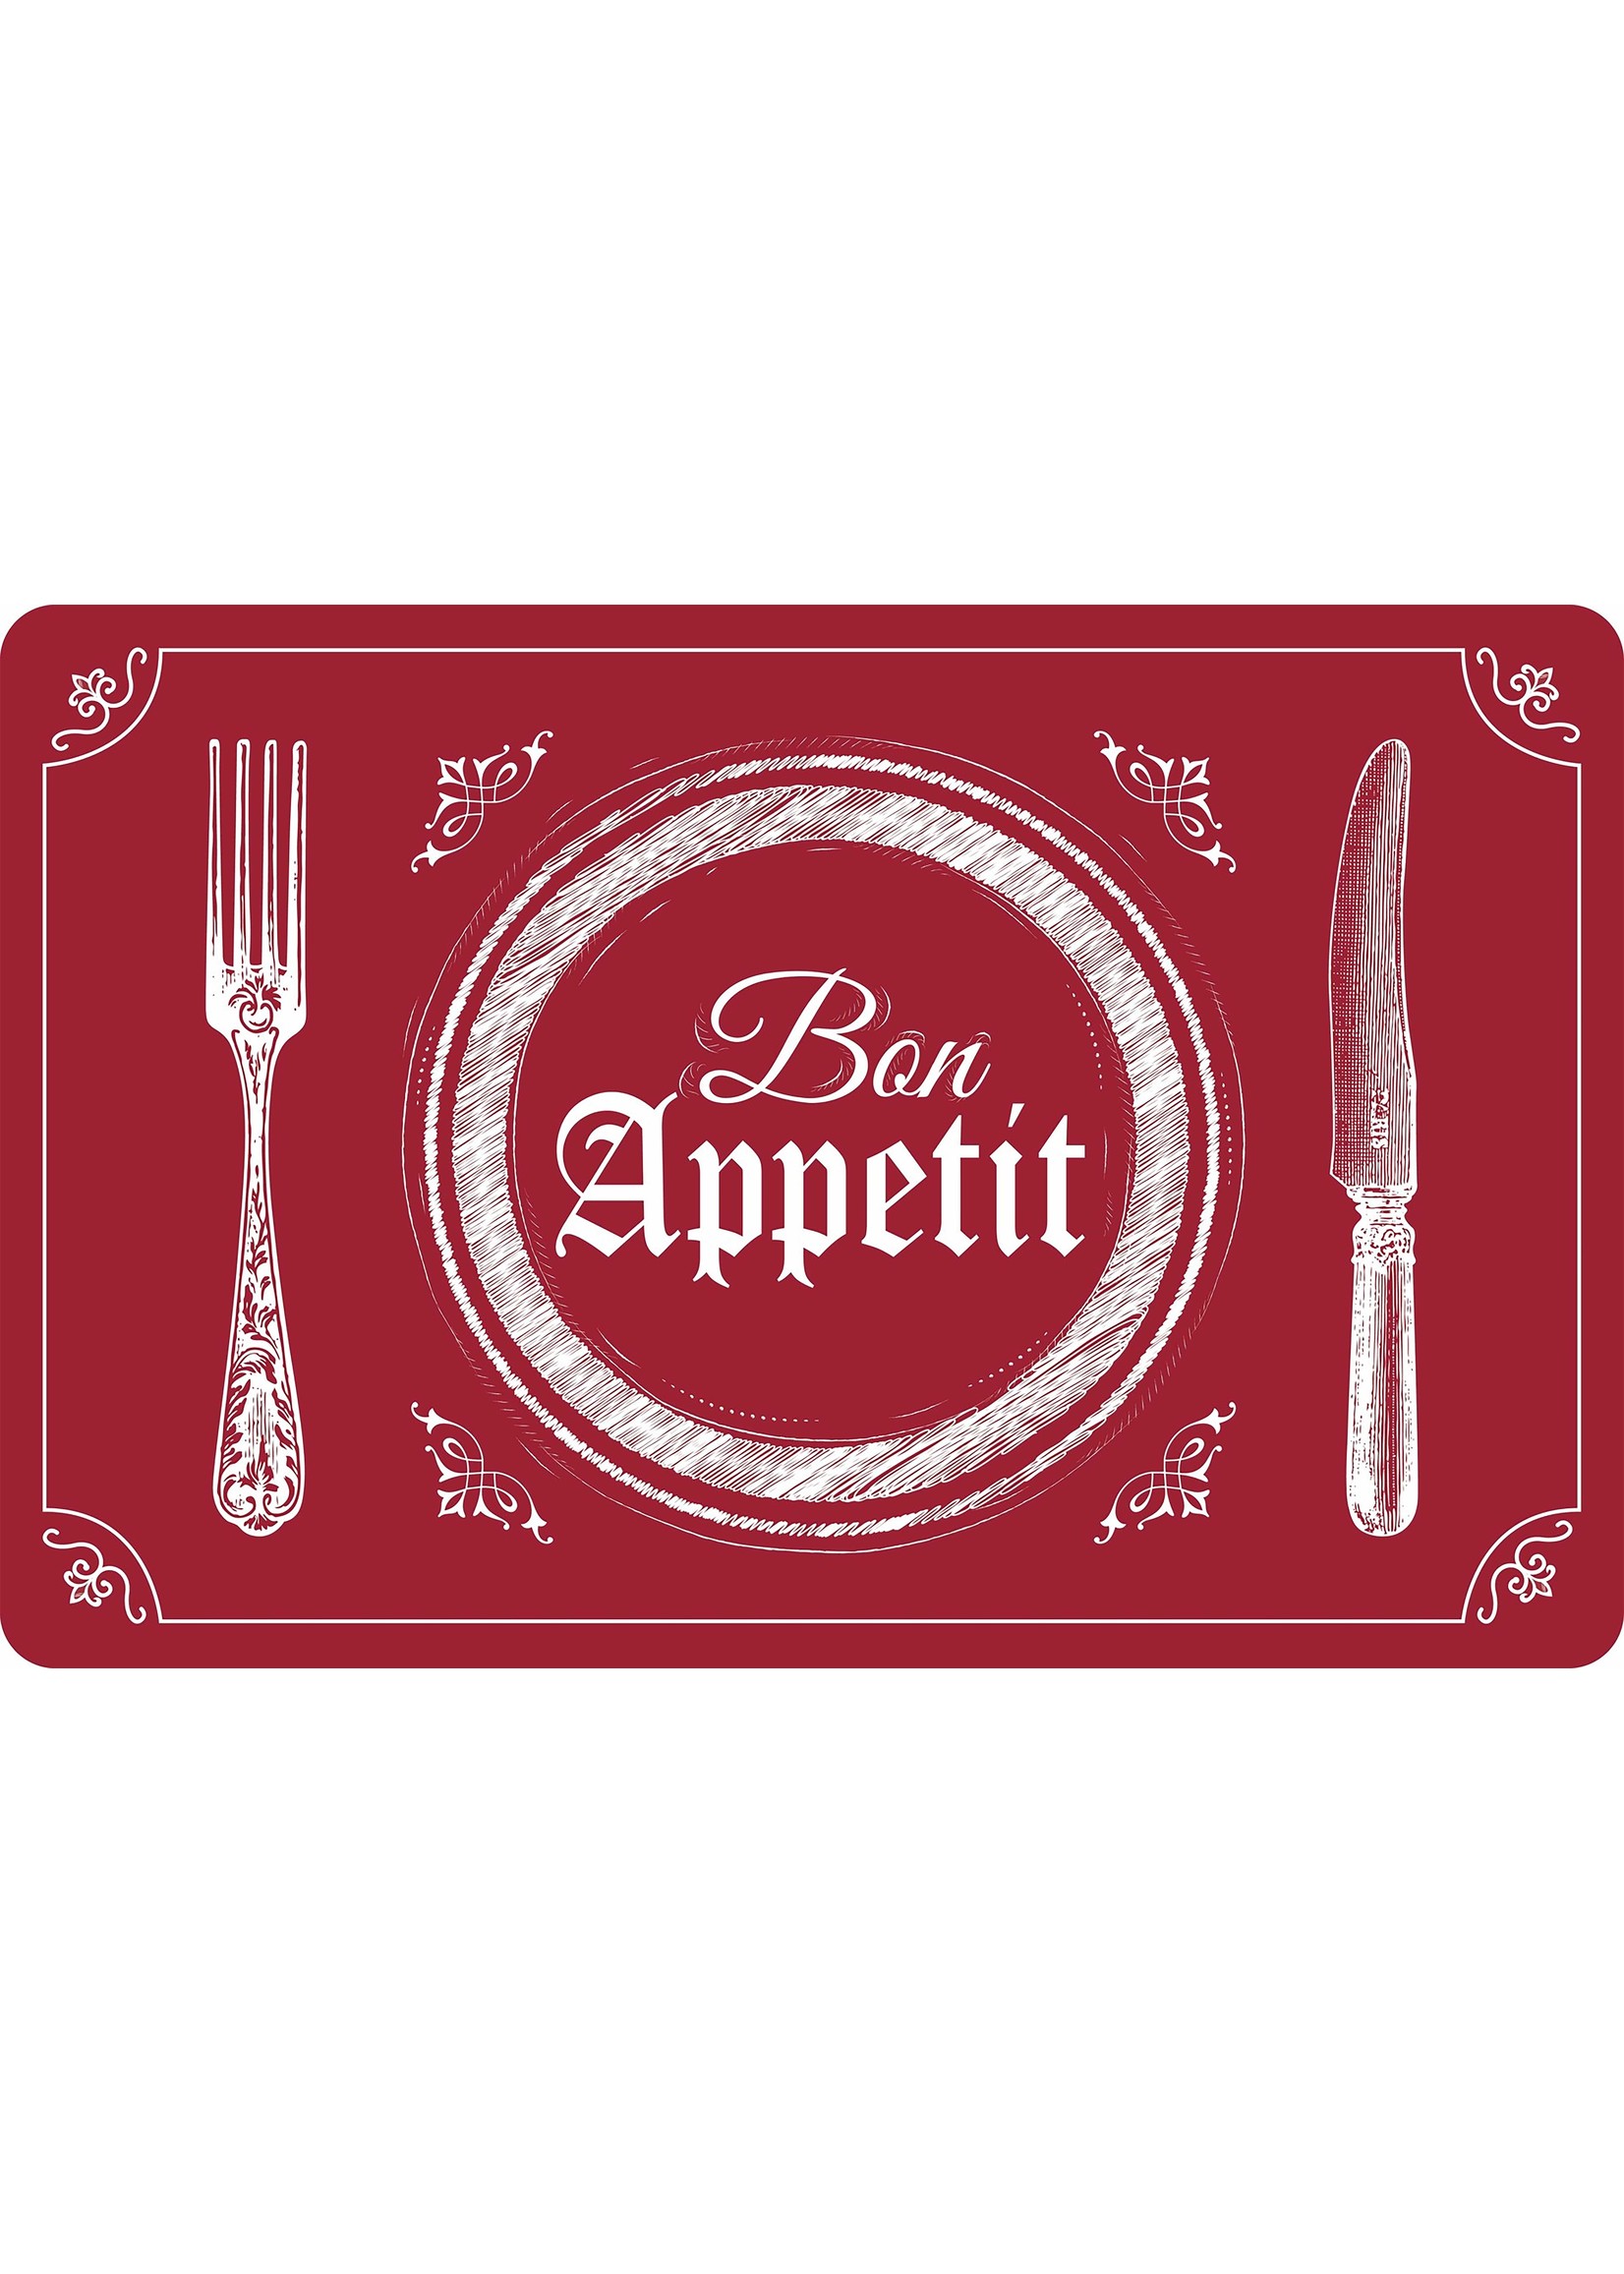 ITY INTERNATIONAL Napperon en Silicone Imprimée "Bon Appetit" Rouge